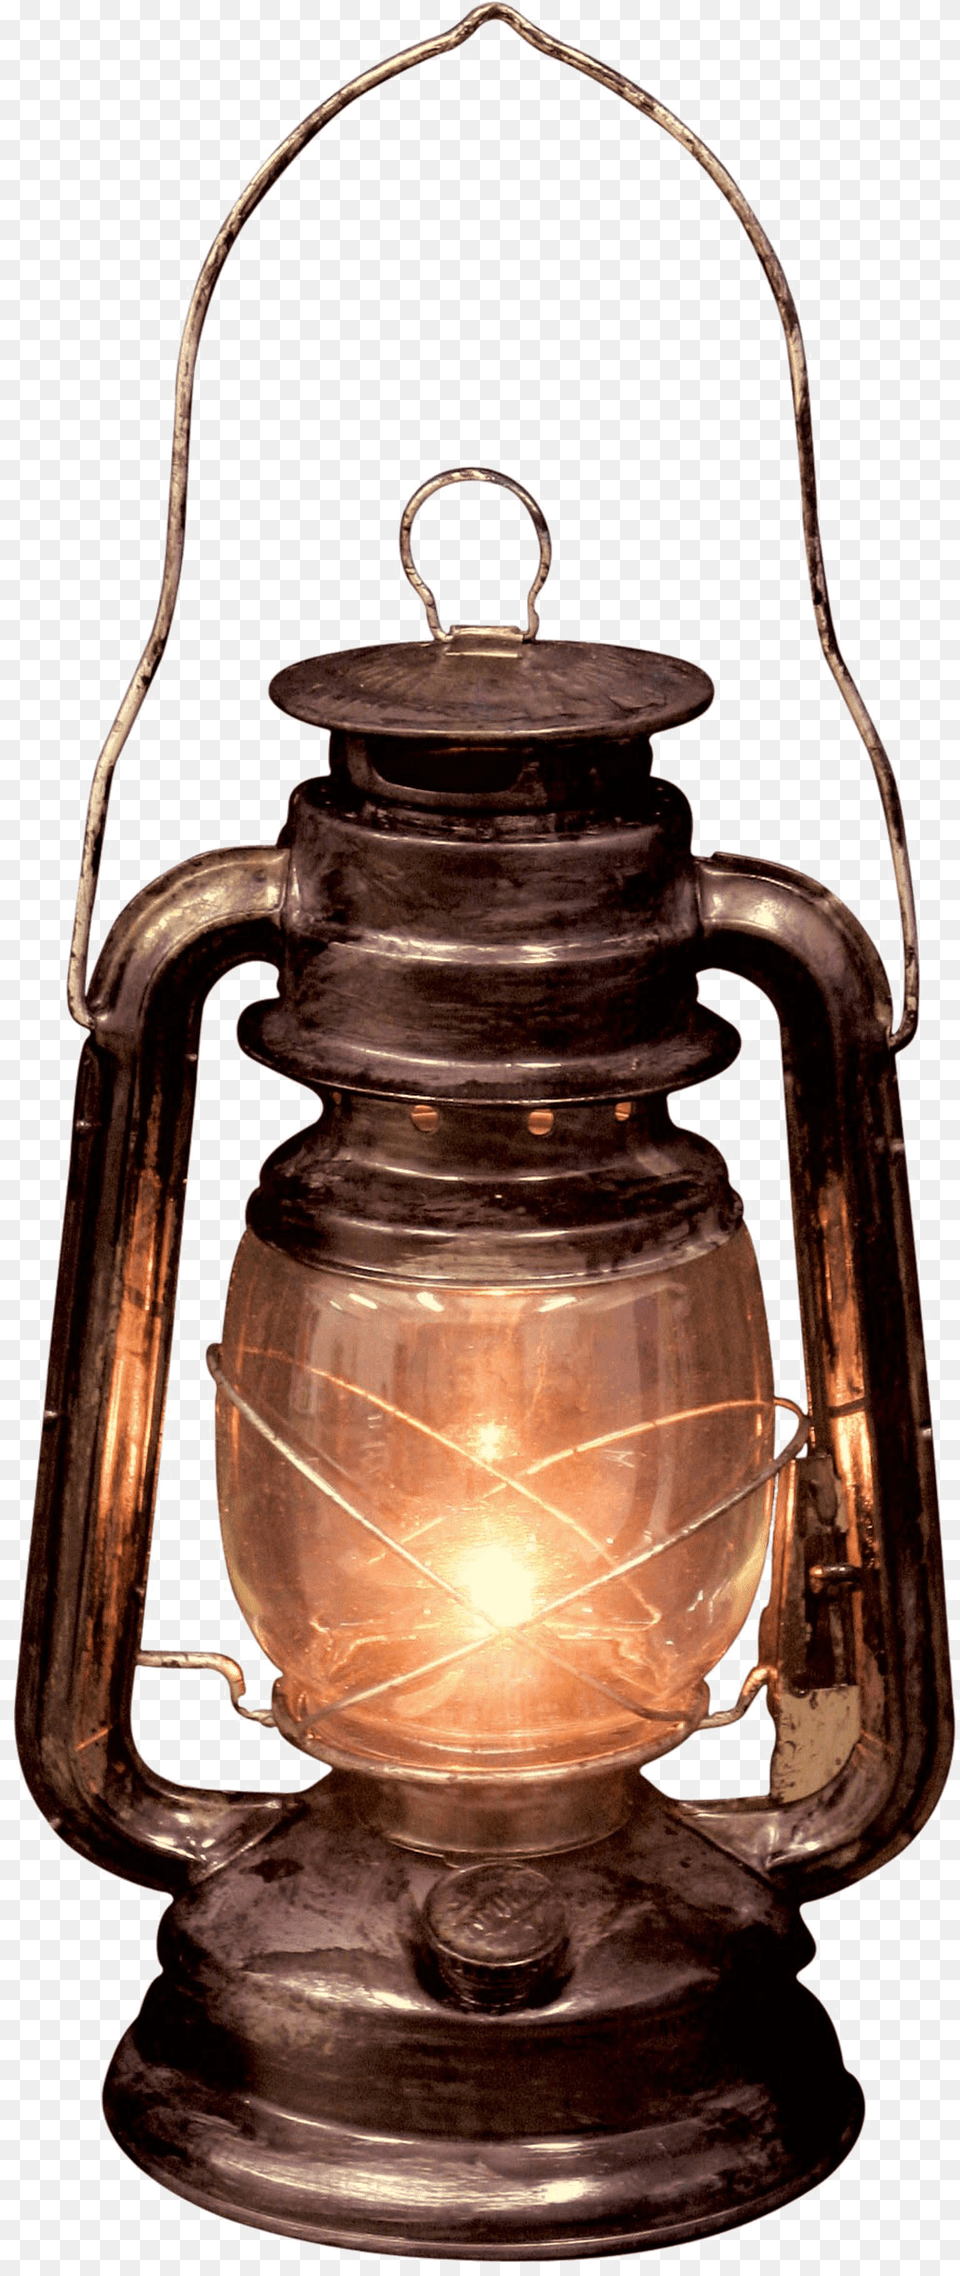 Decorative Lantern Animated Gif Lantern, Lamp Free Transparent Png